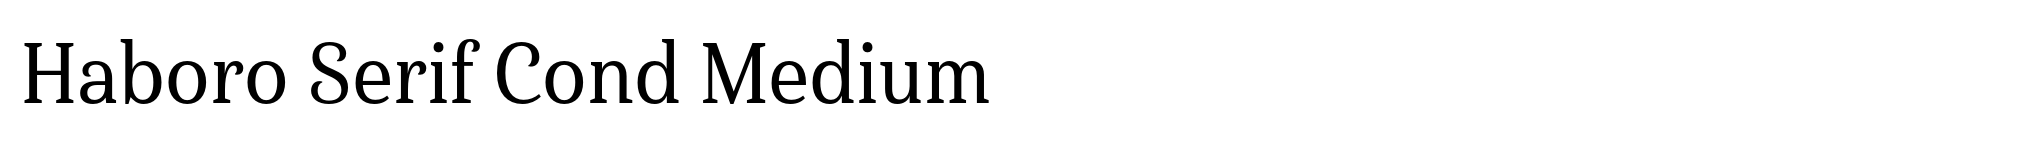 Haboro Serif Cond Medium image